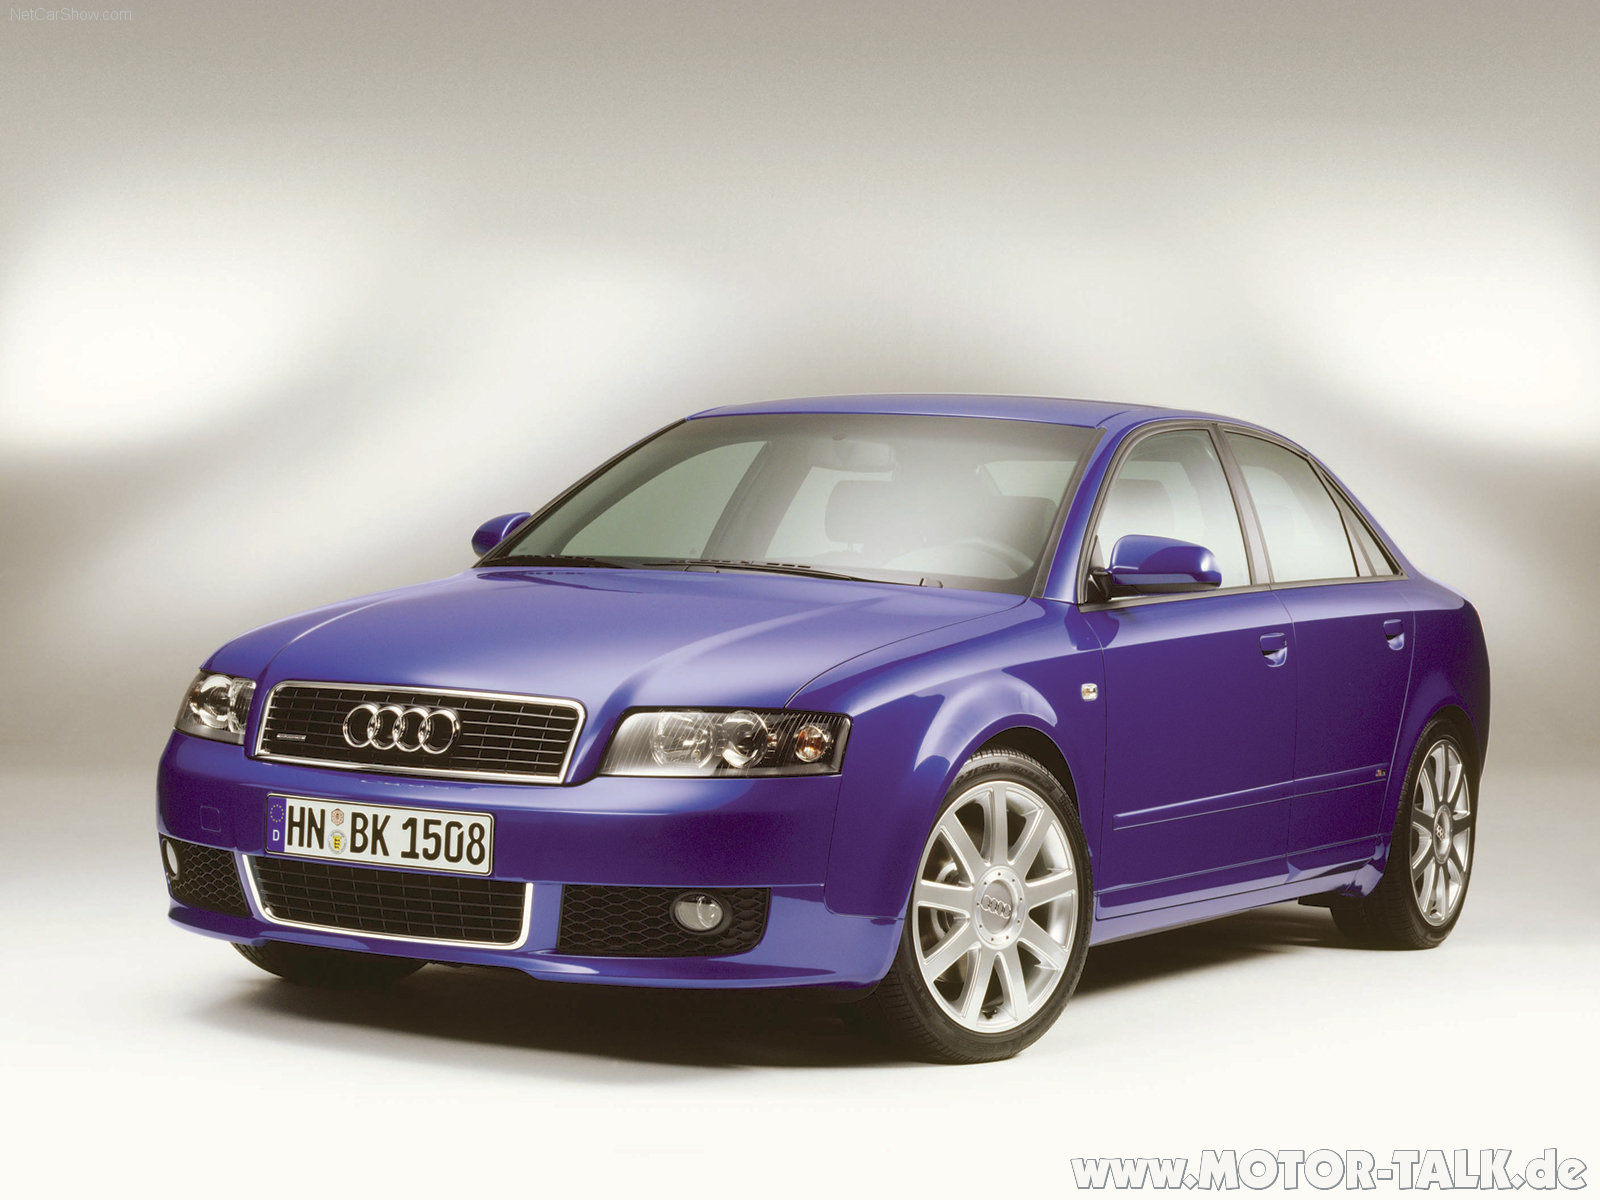 A6 b6. Audi a4 b6 2001. Audi a4 b6 2004. Audi a4 b6 2000. Audi a4 b6 2002.